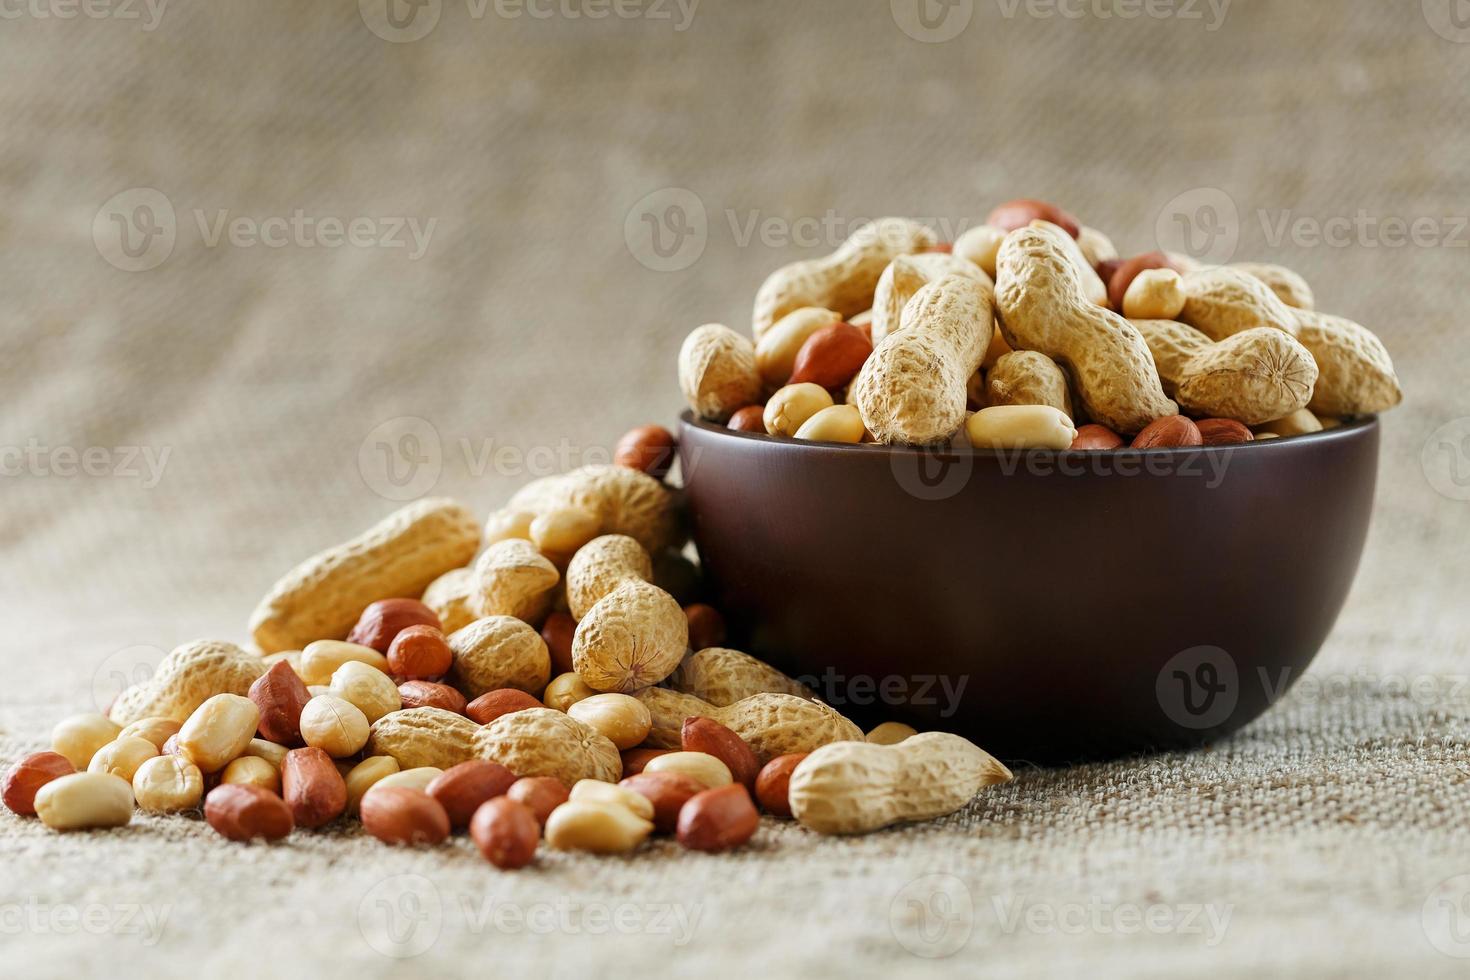 amendoins com casca e close-up descascado em xícaras. amendoins torrados com casca e descascados contra um pano marrom. foto